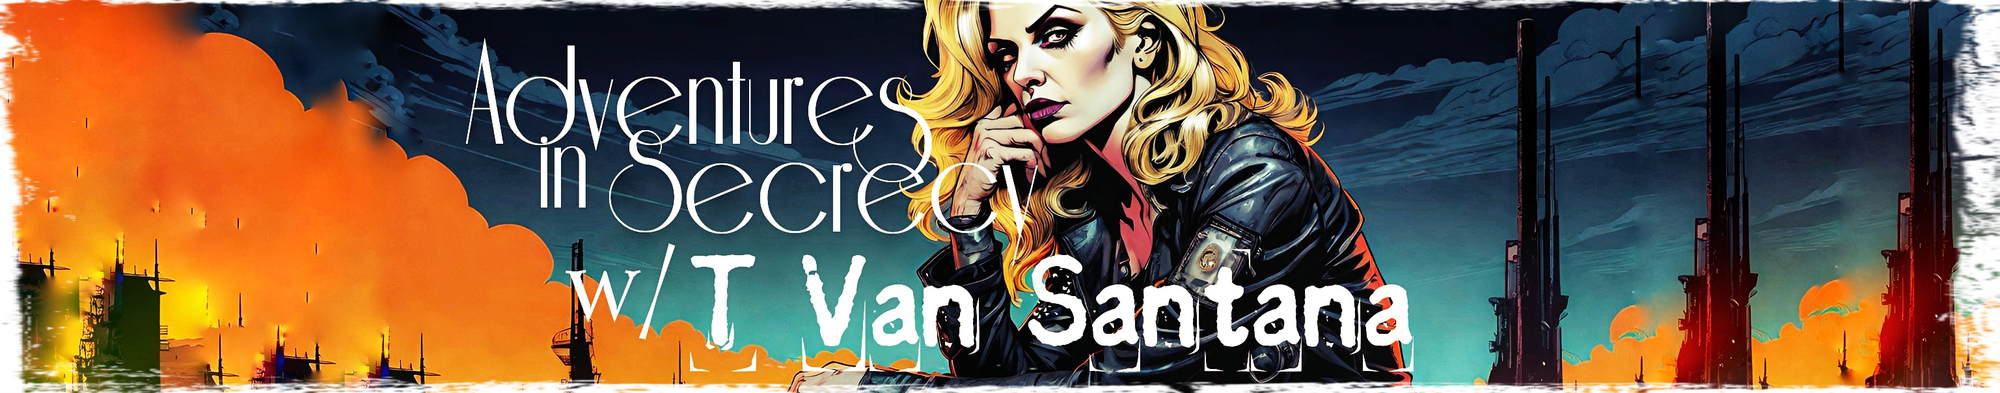 Adventures in Secrecy with T Van Santana